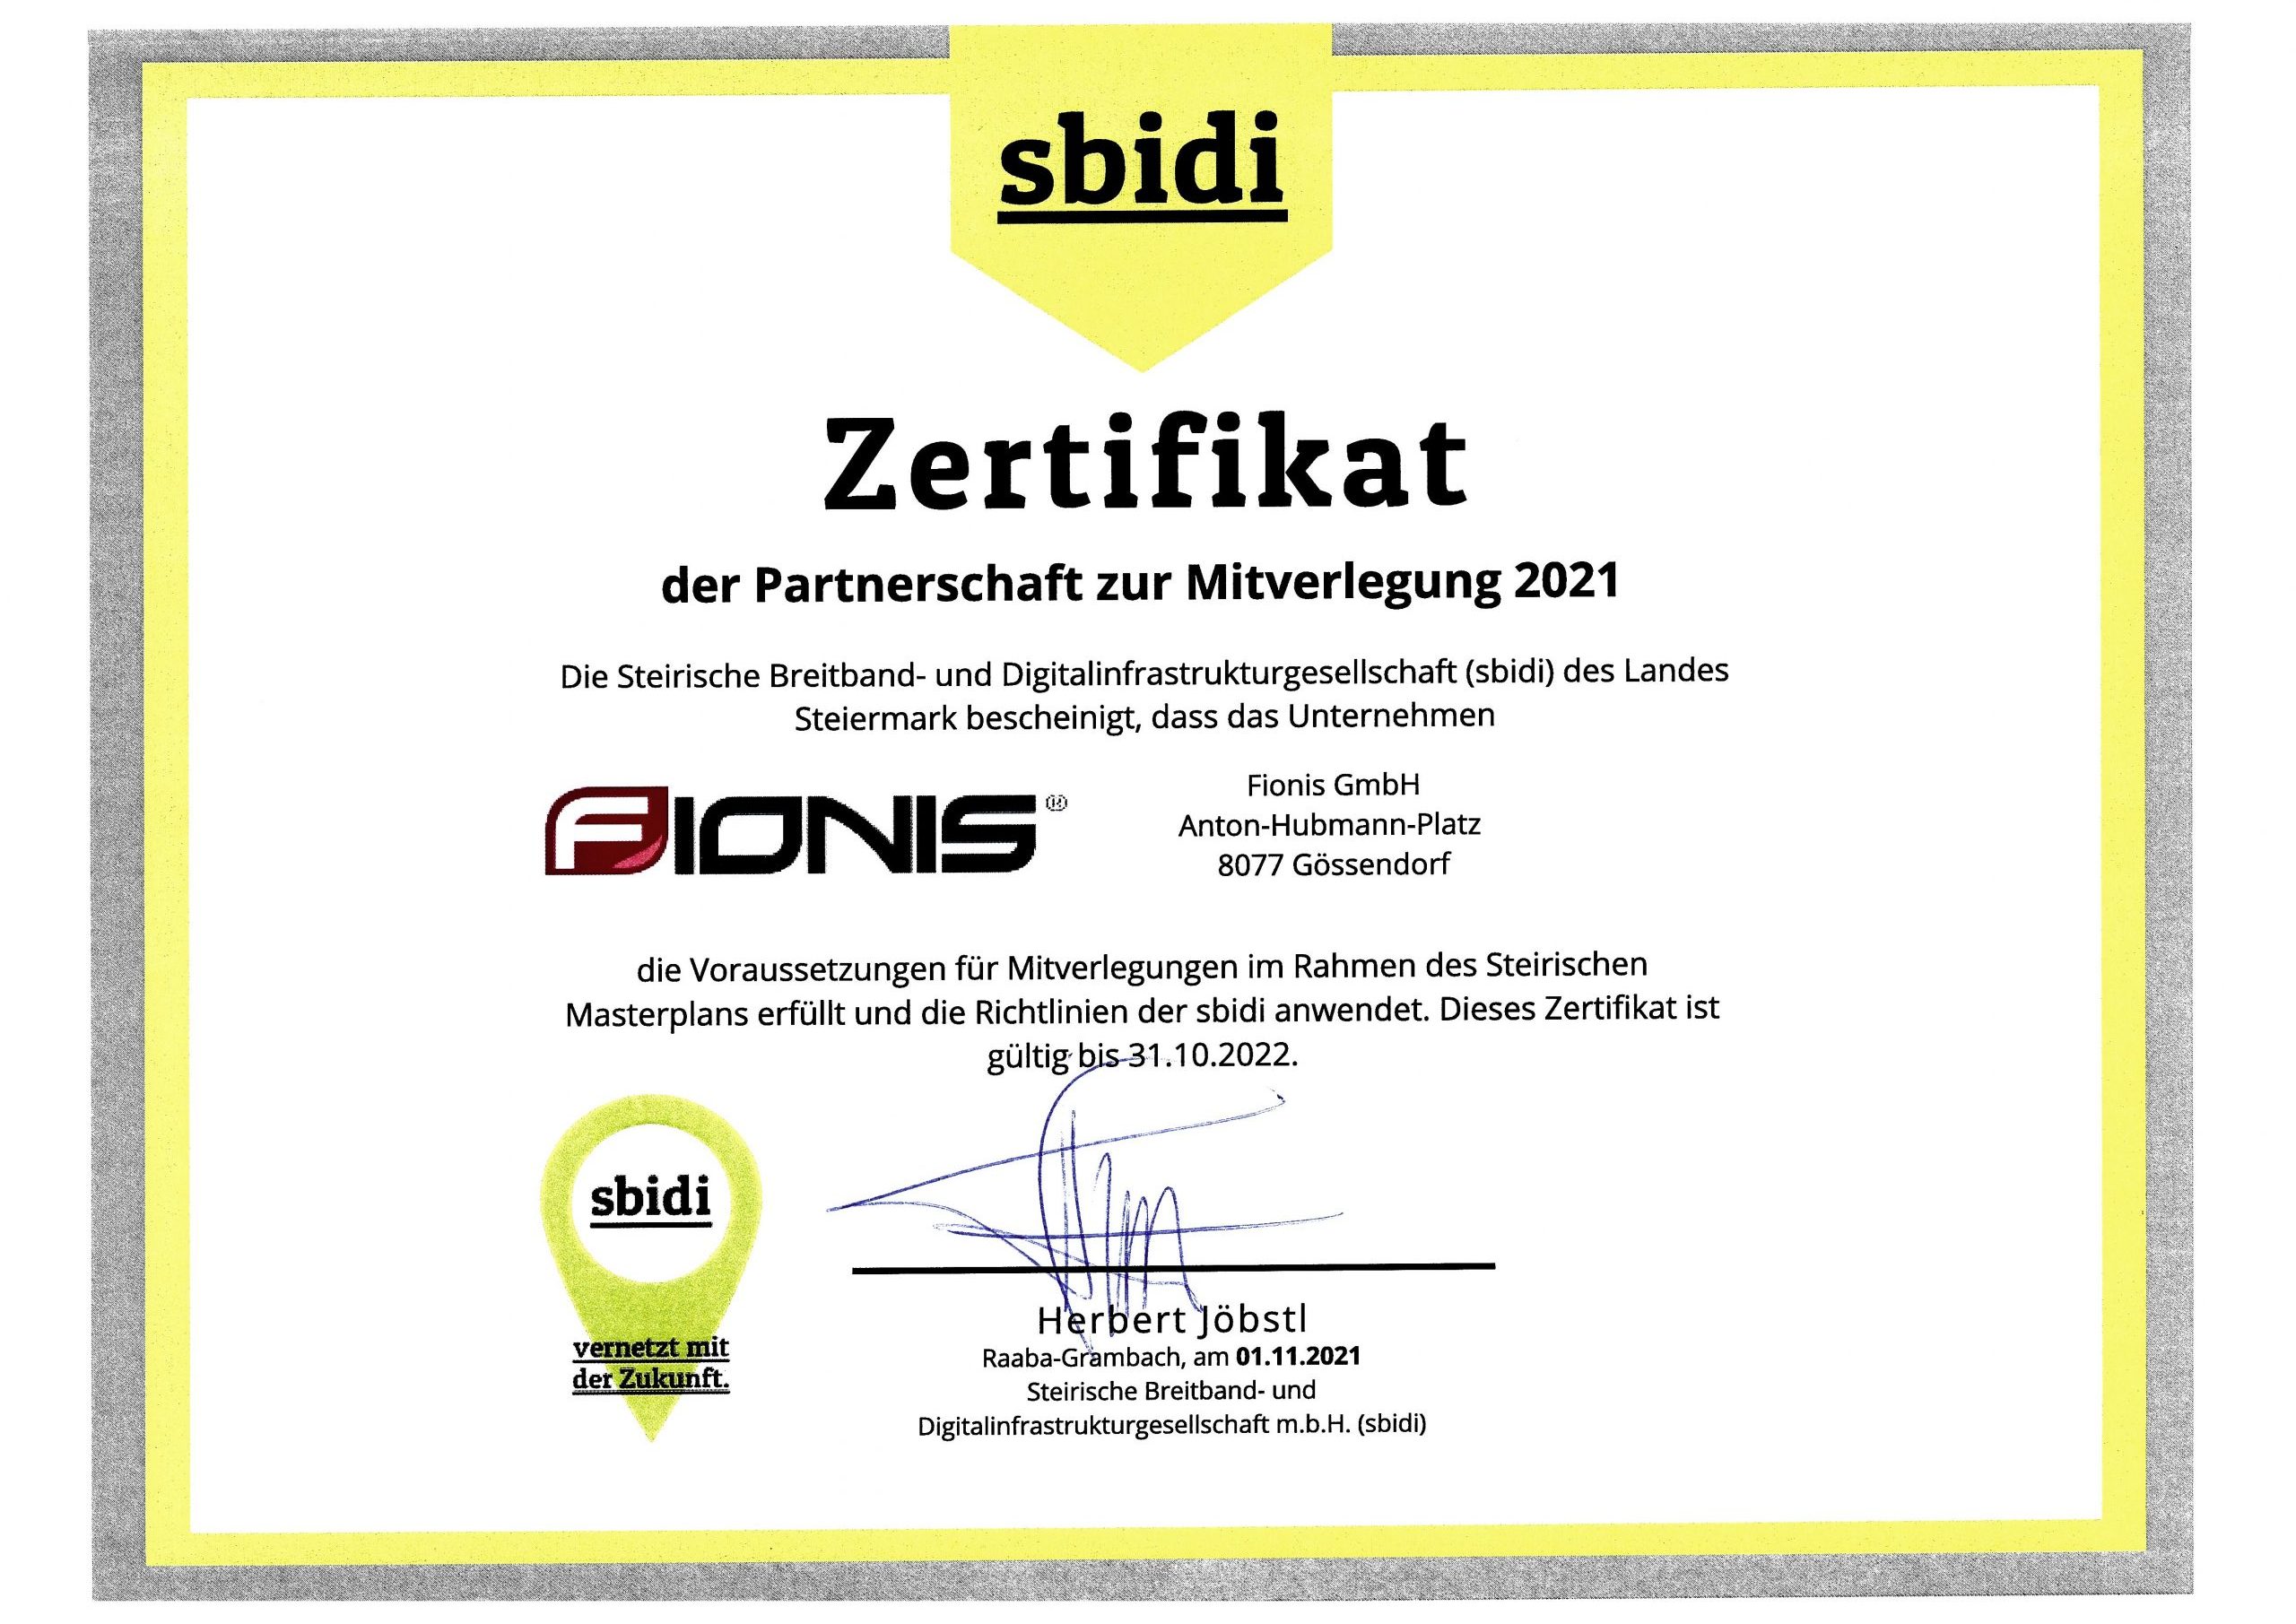 Zertifikat_Fionis_2021-2022